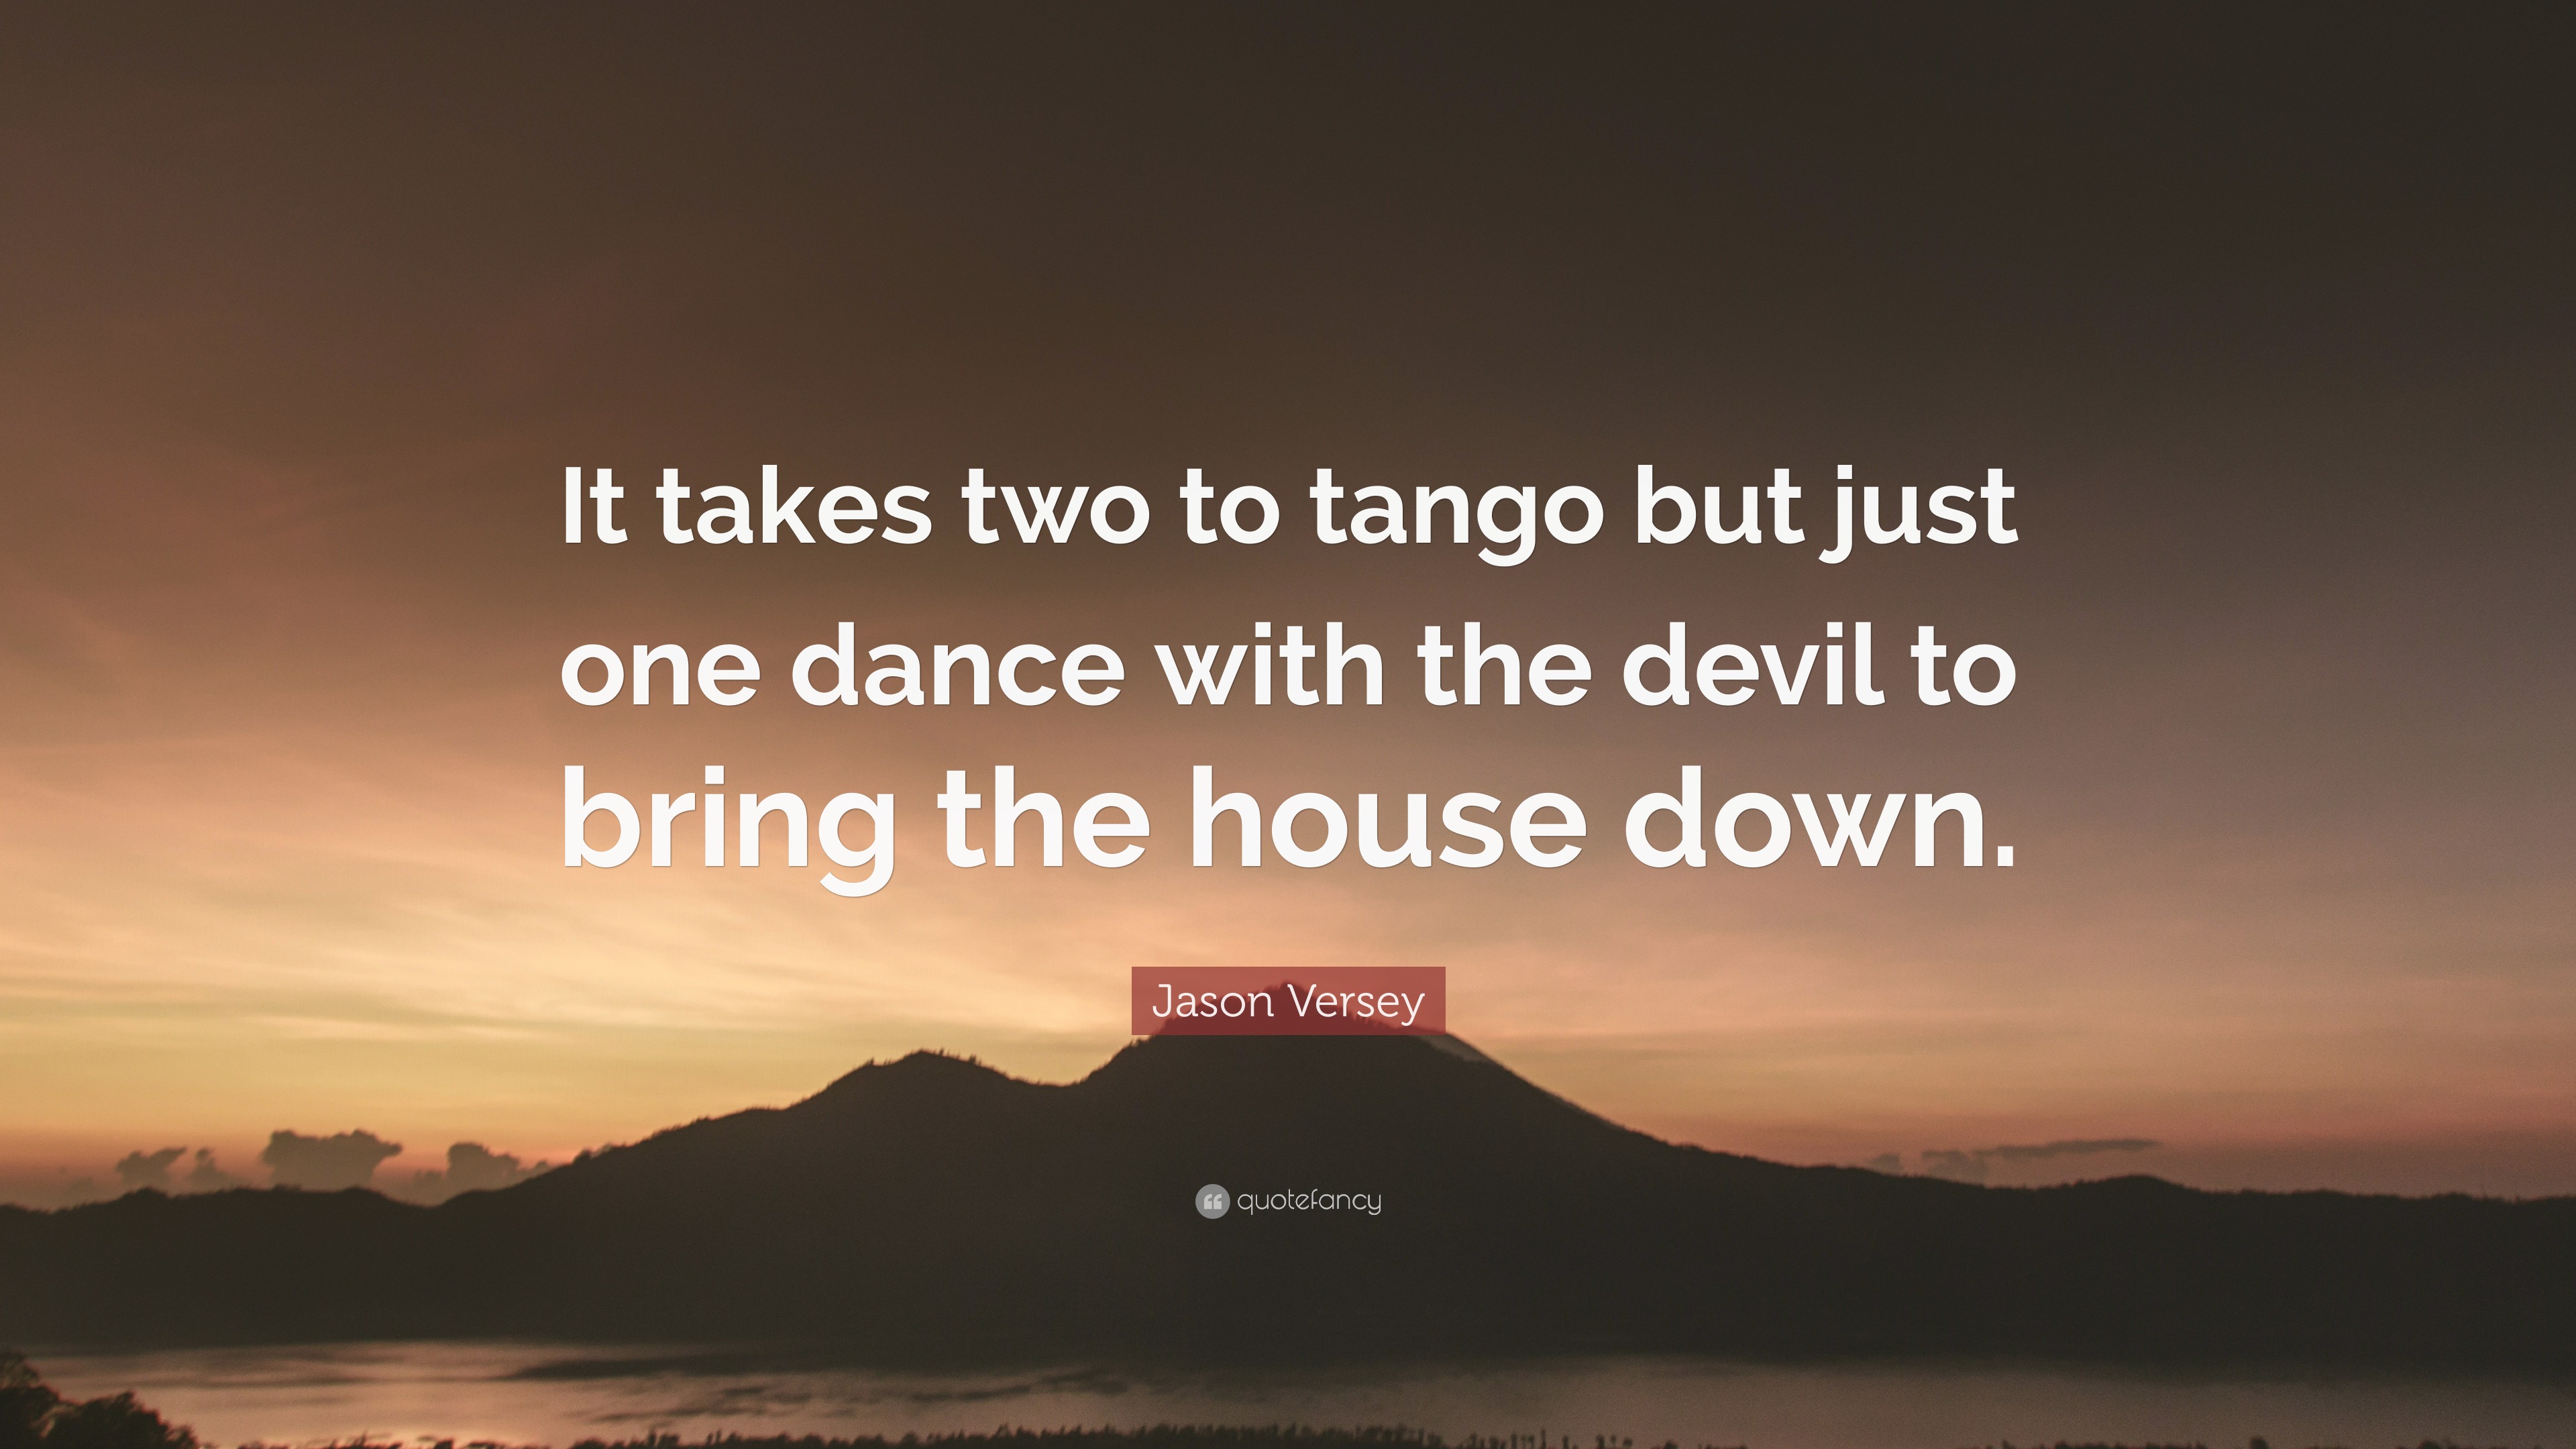 It Takes Two to Tango